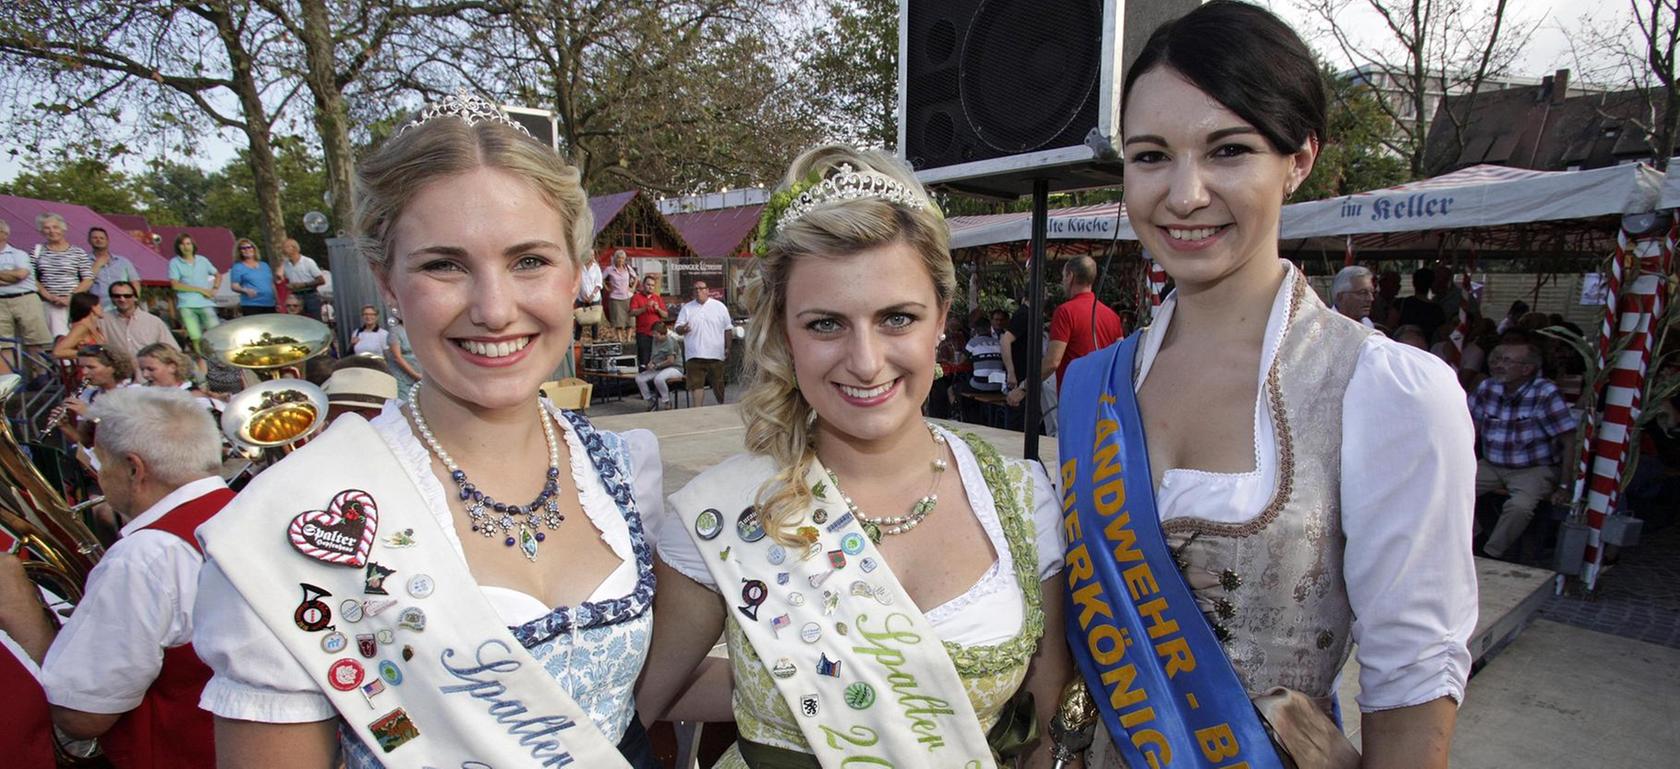 Bierköniginnen und Promis beim Altstadtfest-Auftakt